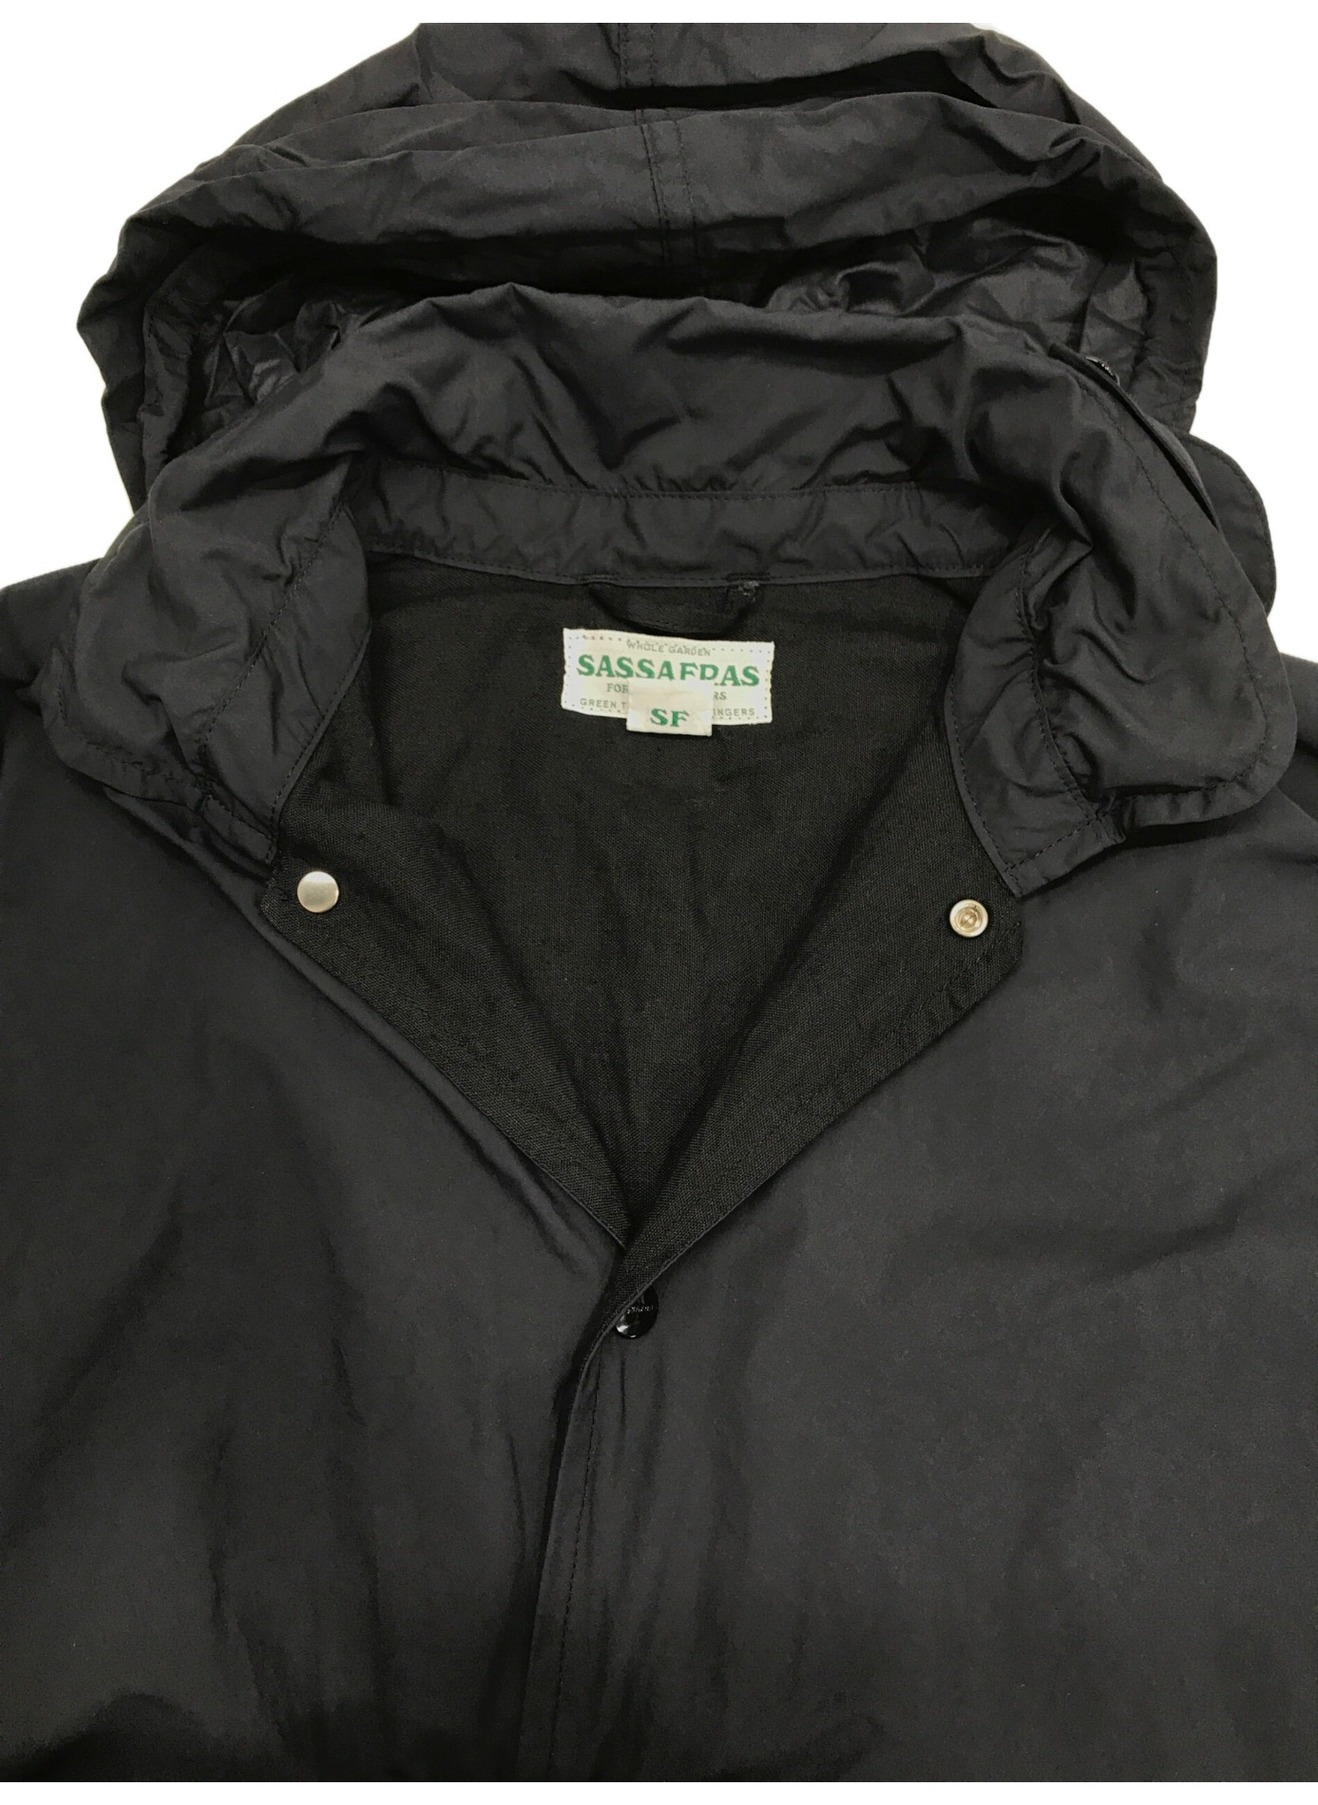 SASSAFRAS (ササフラス) プランツクルーザージャケット ネイビー×ブラック サイズ:S